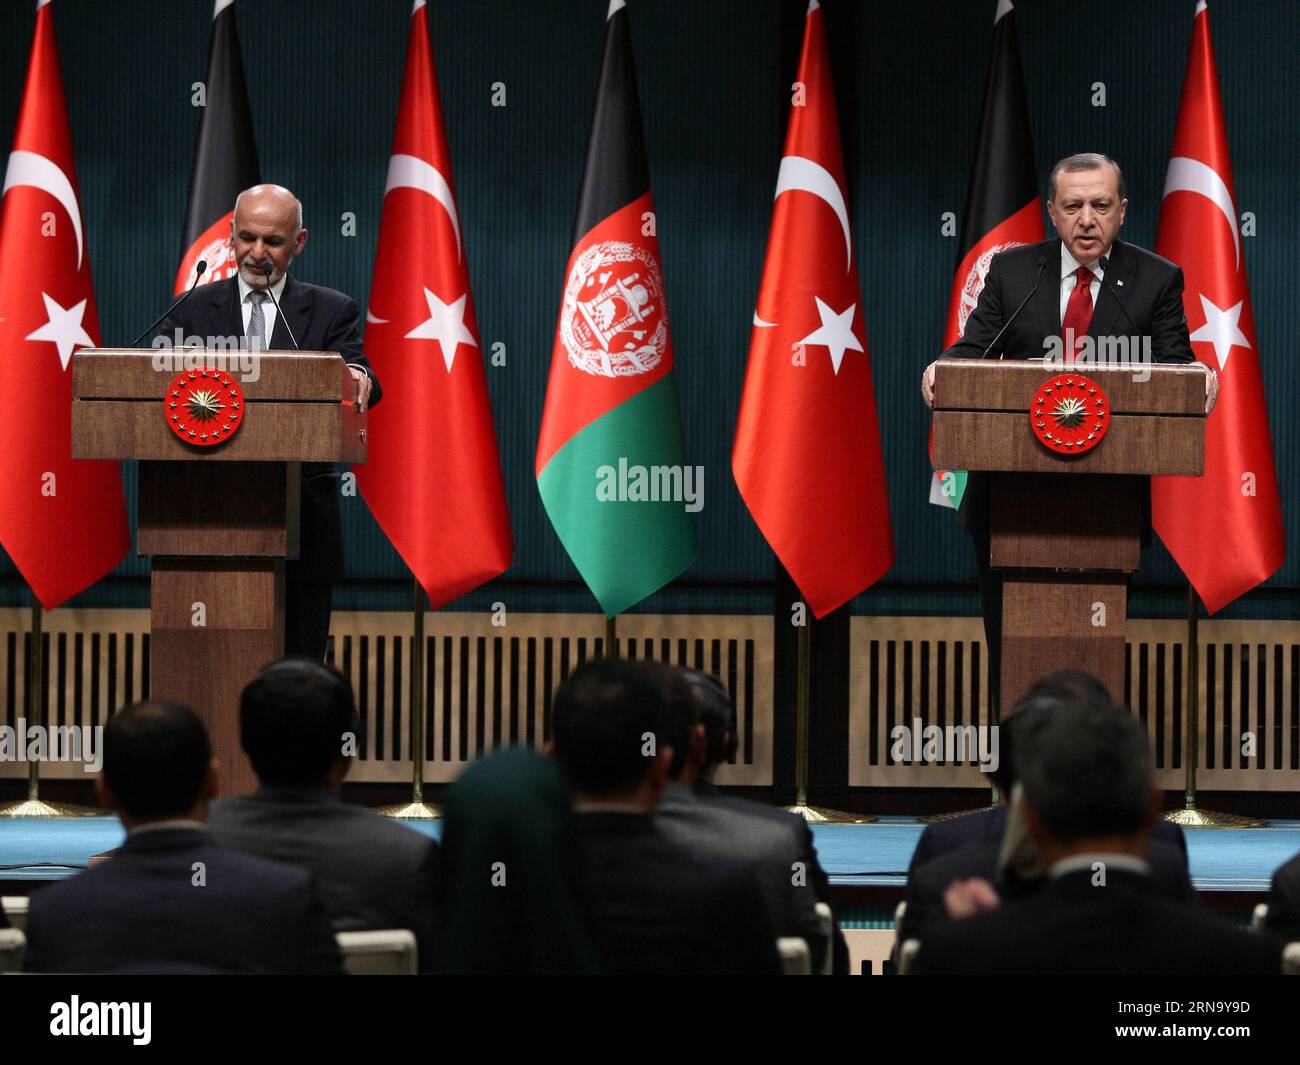 (151224) -- ANKARA, 24 dicembre 2015 -- il presidente turco Recep Tayyip Erdogan (R) e il presidente afghano Ashraf Ghani partecipano a una conferenza stampa congiunta ad Ankara, Turchia, il 24 dicembre 2015. Il presidente turco Recep Tayyip Erdogan ha detto giovedì che le truppe turche in Afghanistan rimarranno lì fino a quando il governo afghano lo desidera. ) TURCHIA-ANKARA-TROOPS-AFGHANISTAN MustafaxKaya PUBLICATIONxNOTxINxCHN 151224 Ankara DEC 24 2015 il presidente turco Recep Tayyip Erdogan r e il presidente afghano Ashraf Ghani partecipano a una conferenza stampa congiunta ad Ankara in Turchia IL 24 dicembre 2015 il presidente turco Recep Ta Foto Stock